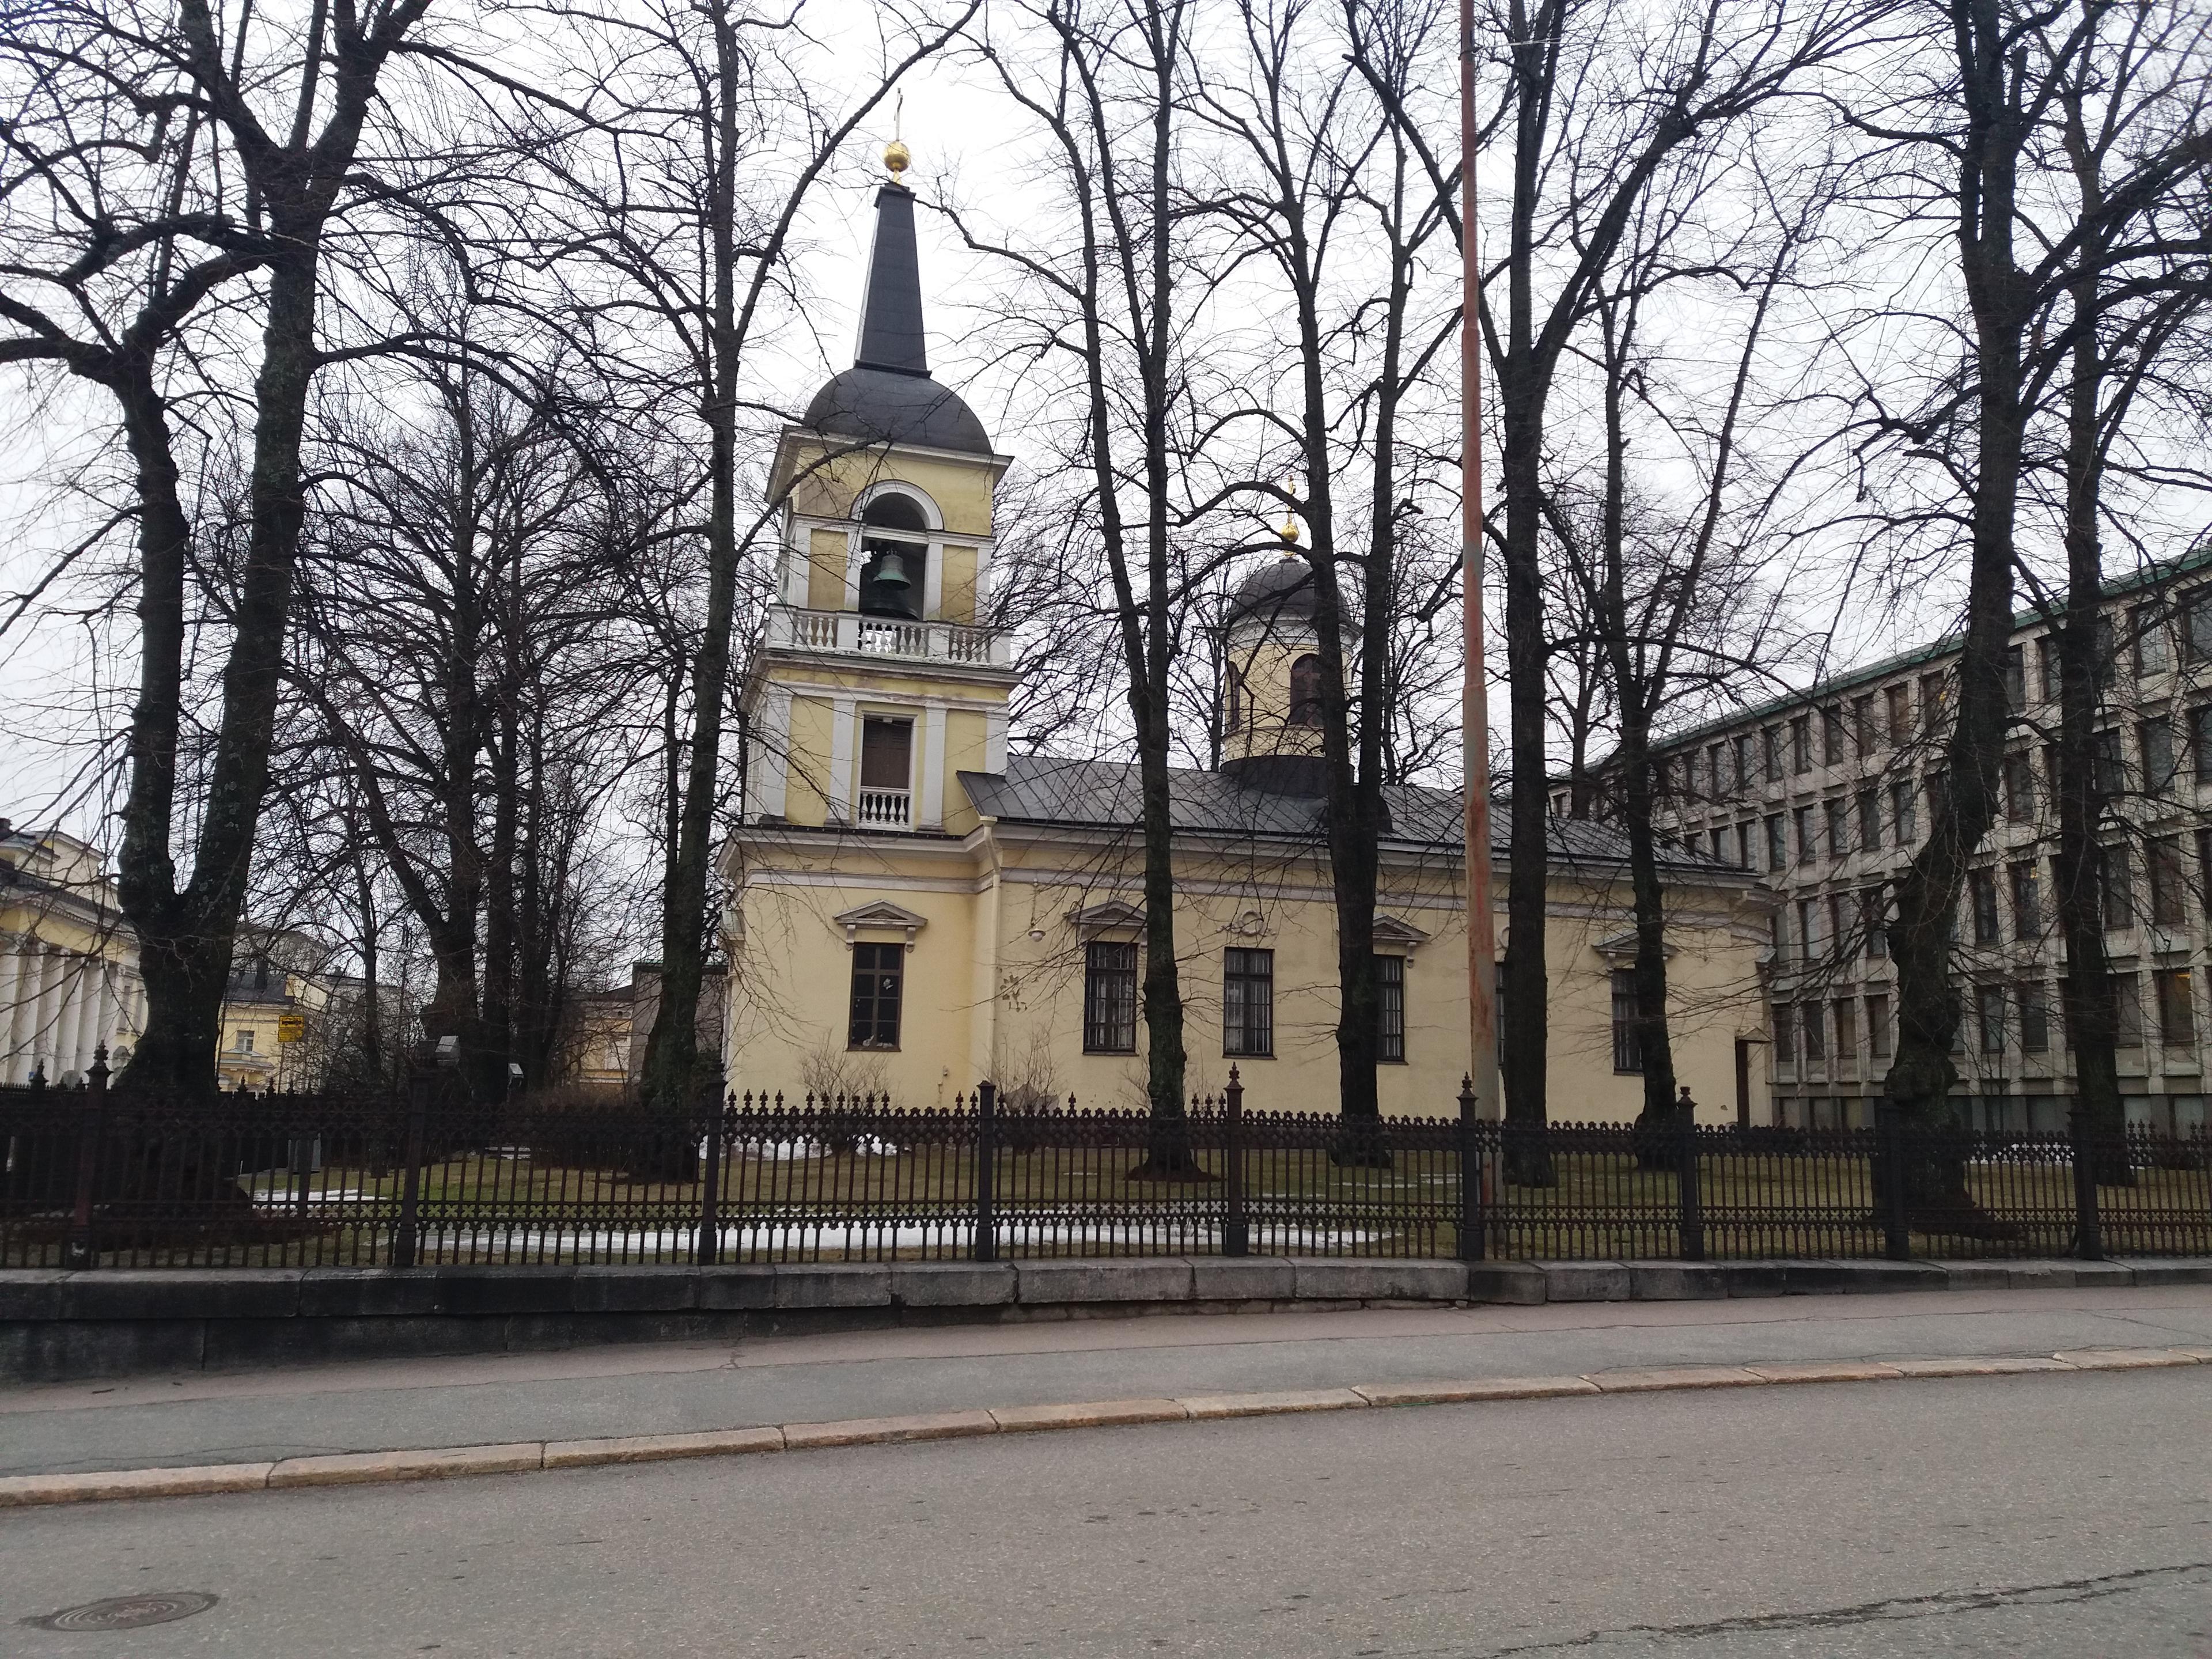 Cover image of this place Pyhän Kolminaisuuden kirkko